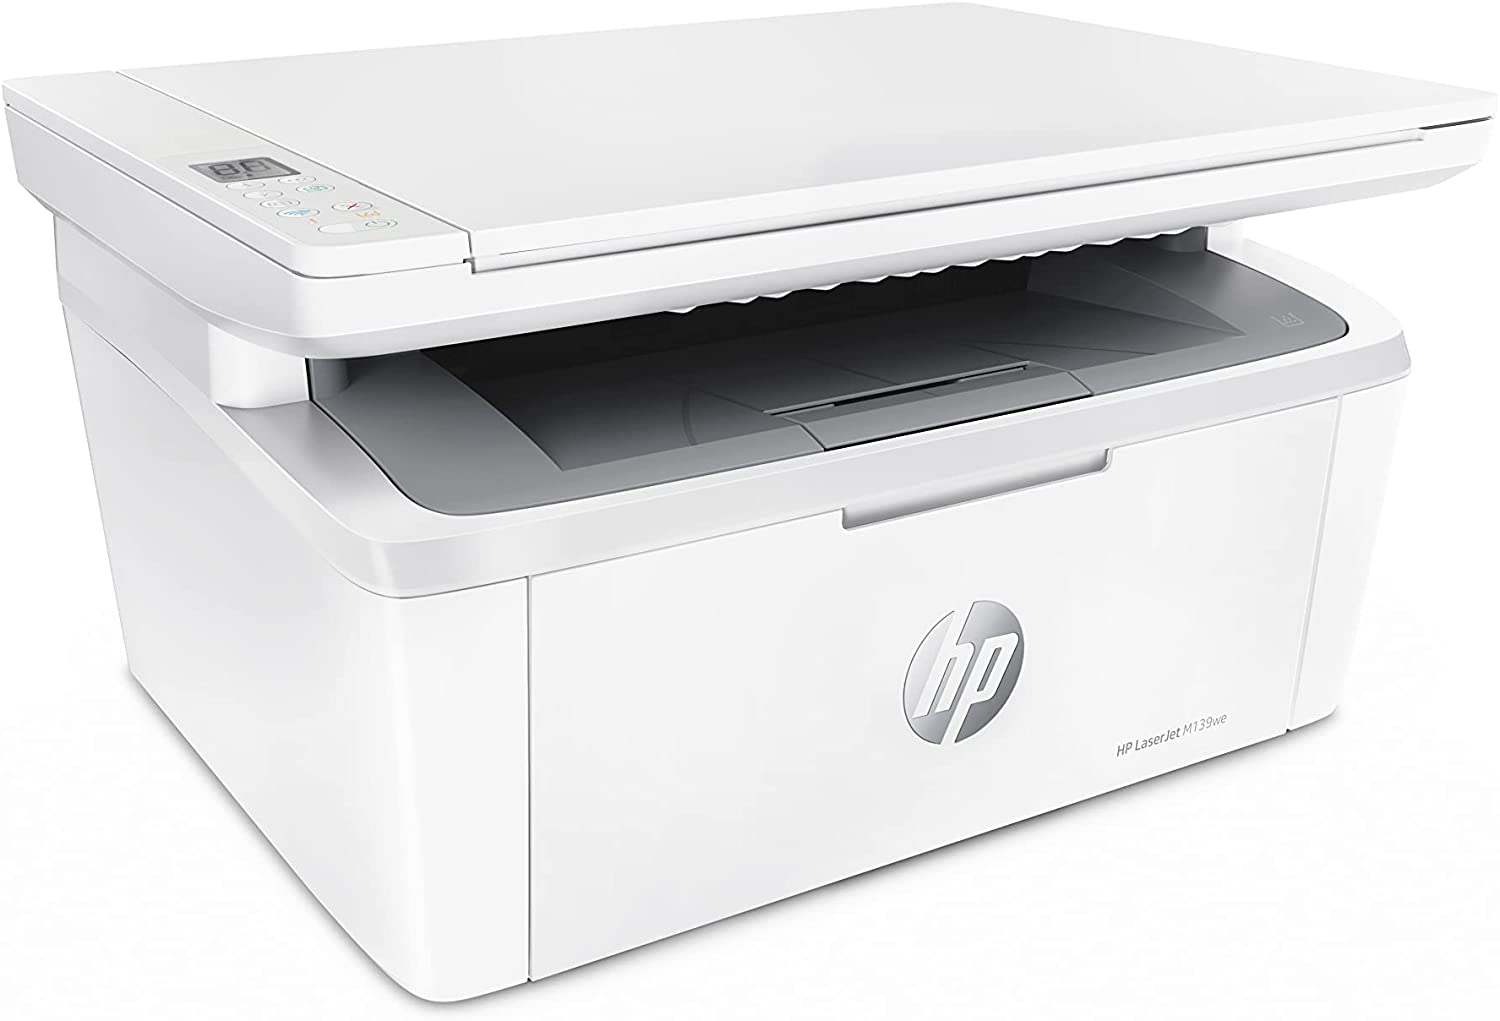 Imprimante noir et blanc sans fil HP Laserjet MFP M139we